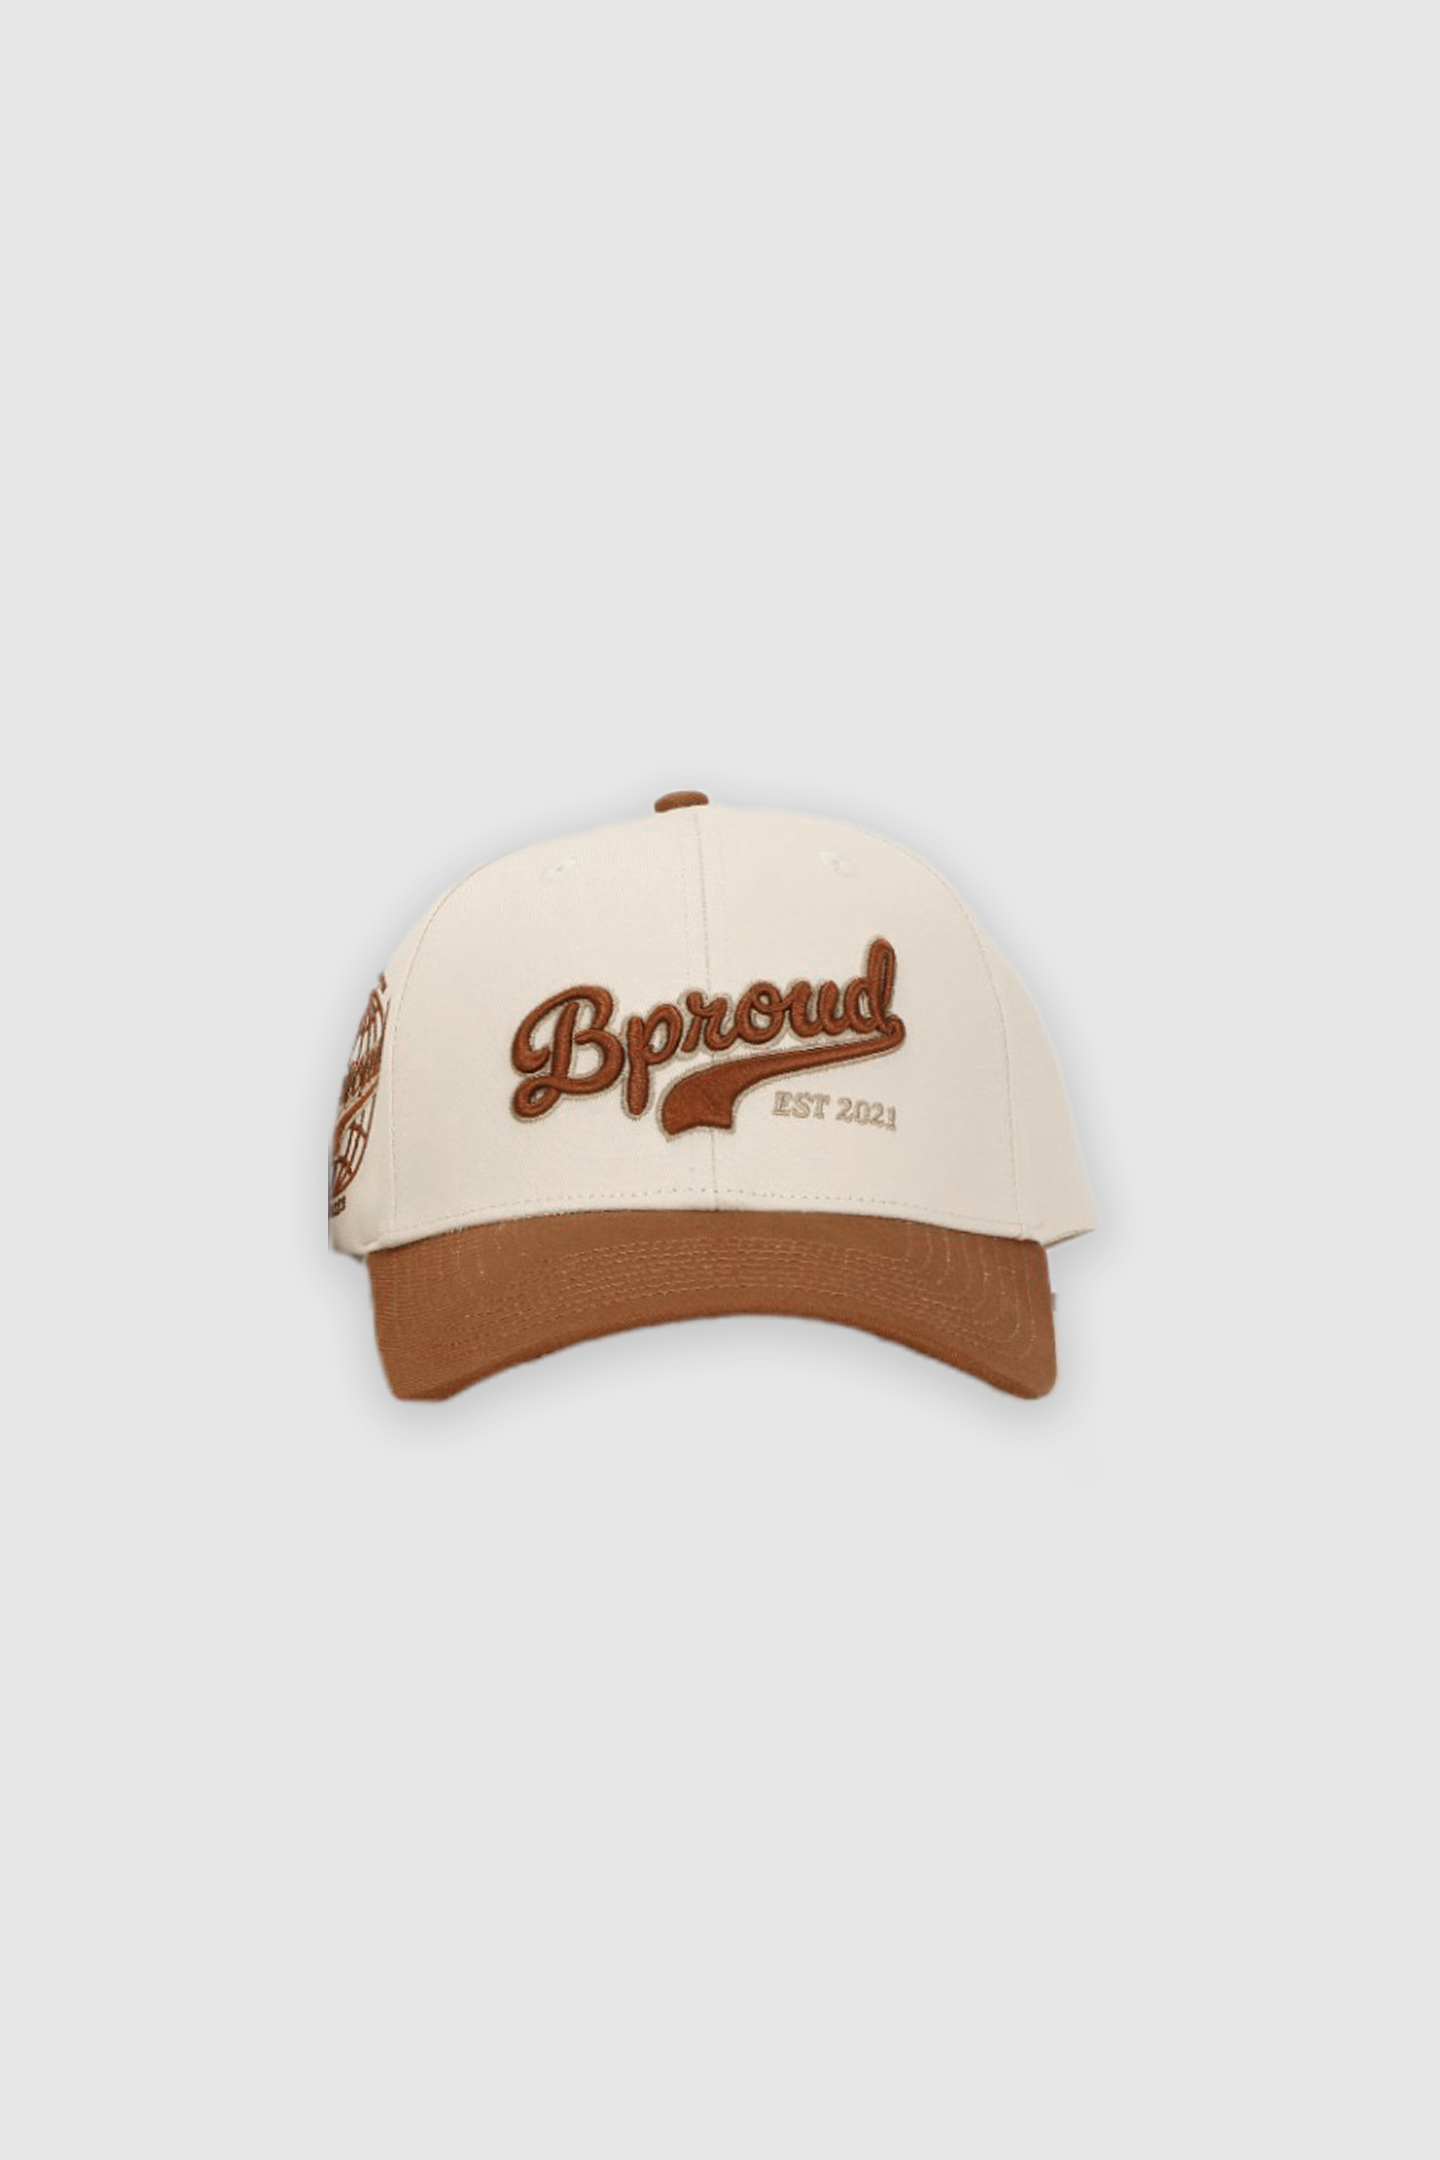 Bproud "Brown" Baseball Cap